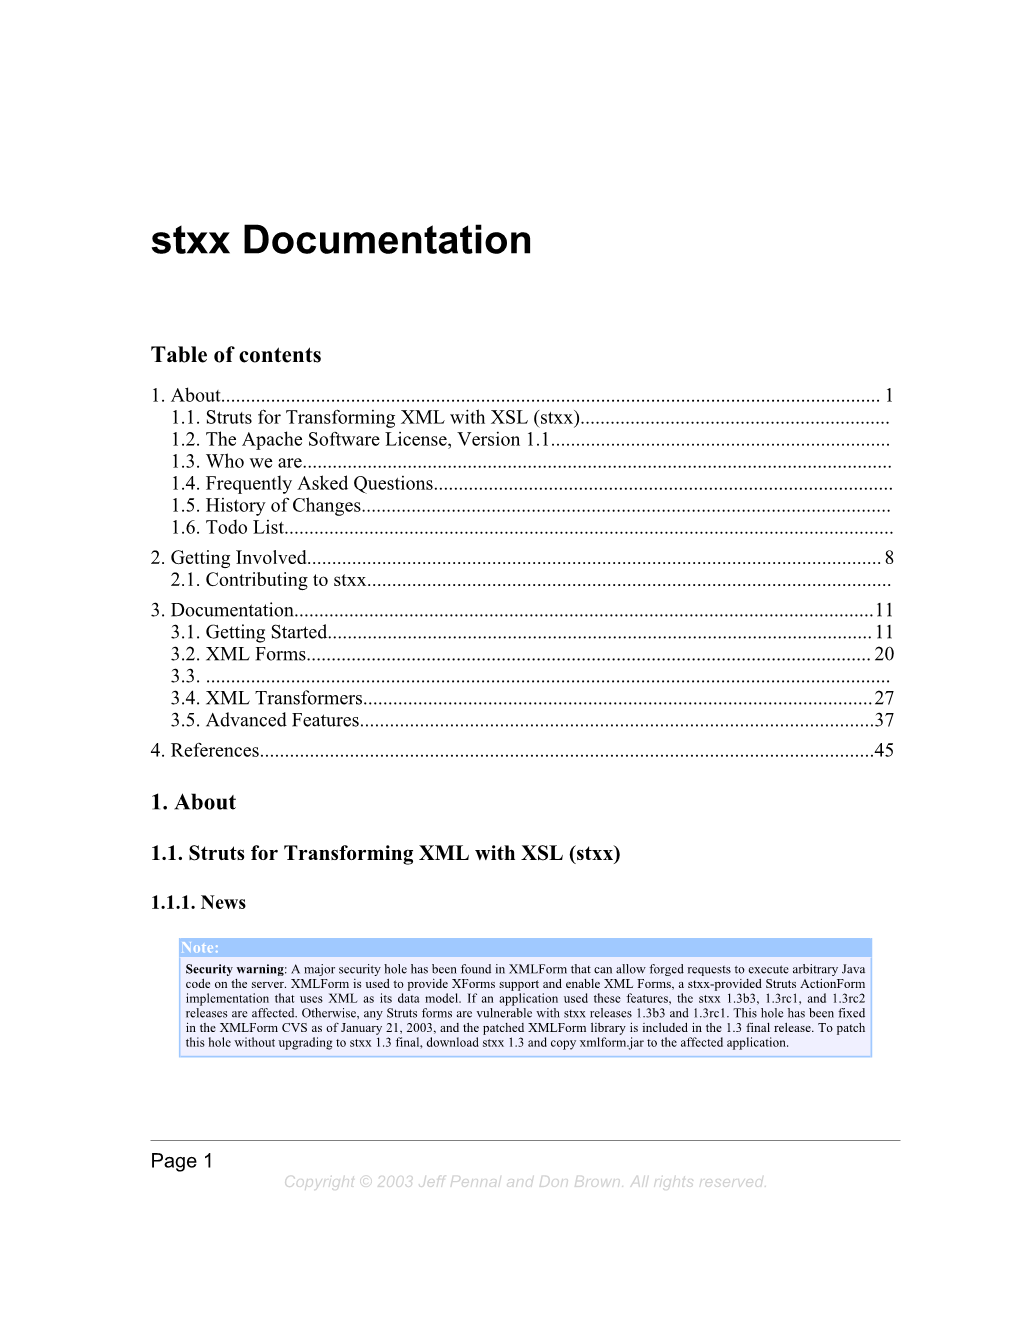 Stxx Documentation